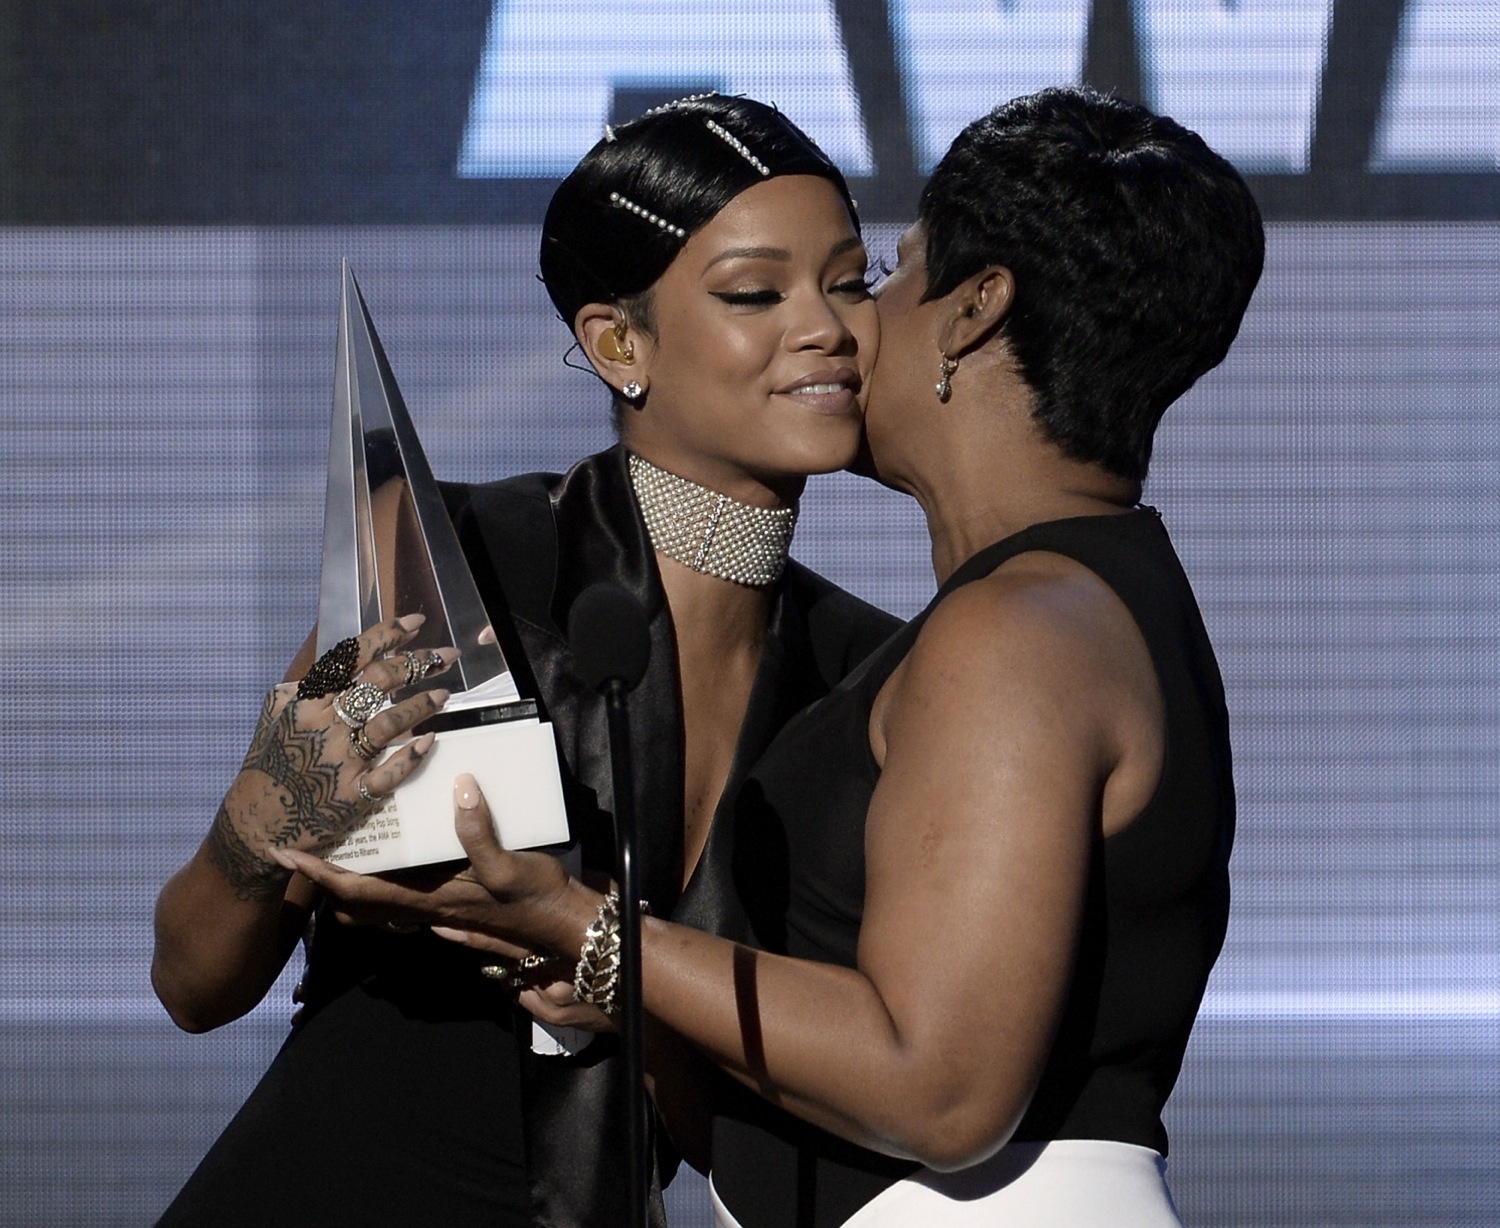 Rihanna kissed